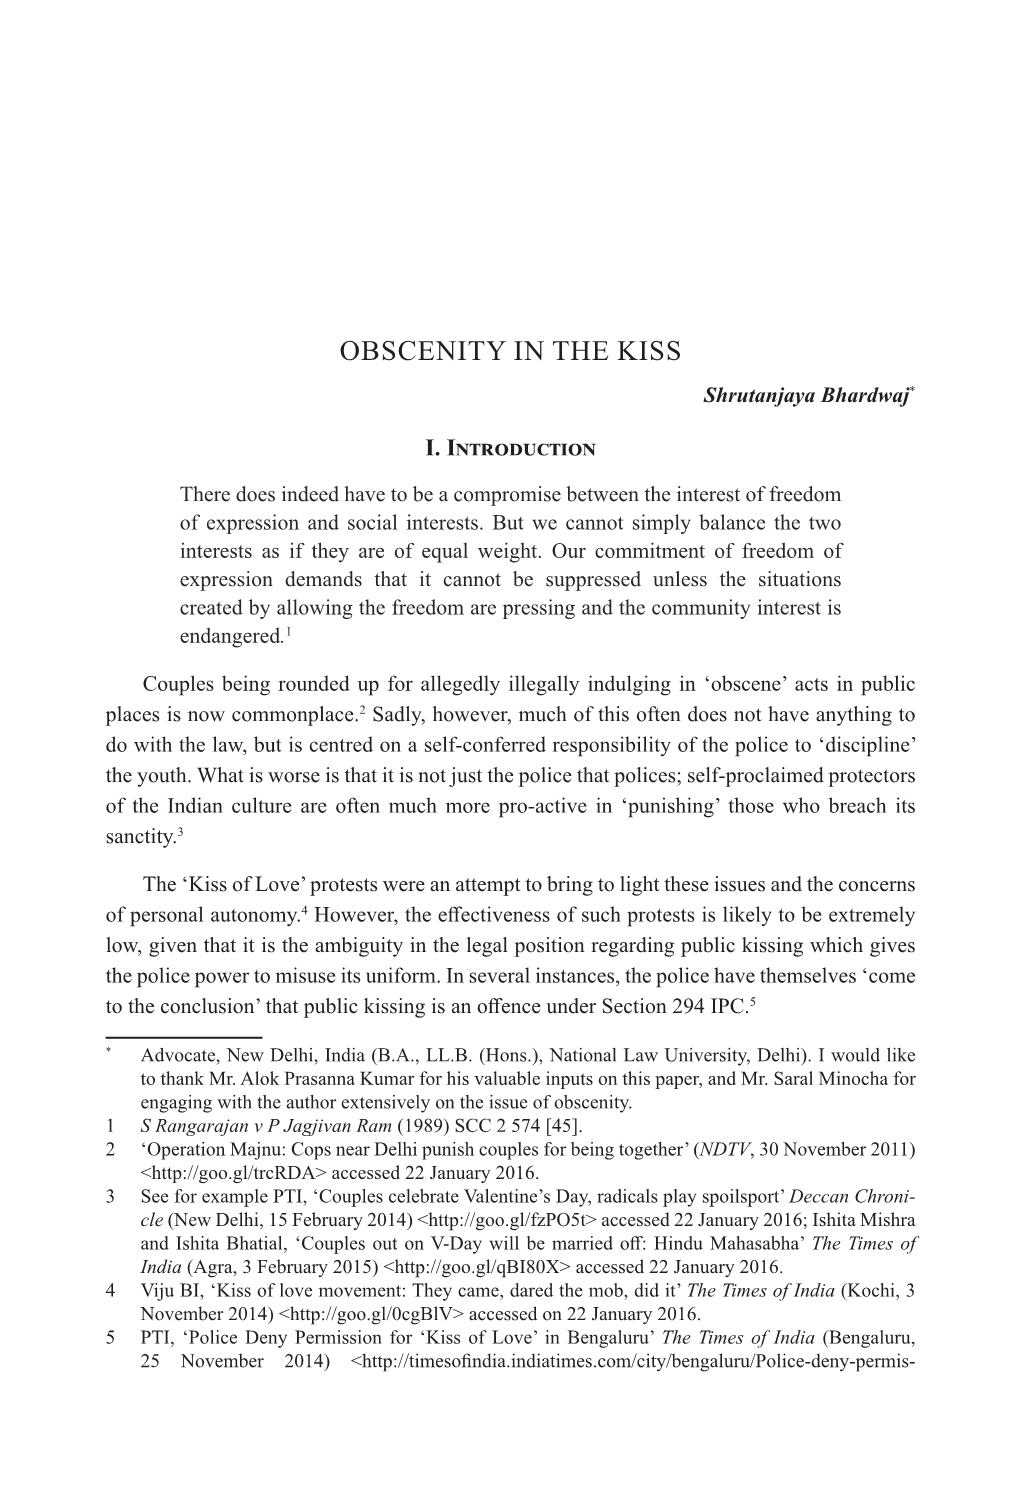 OBSCENITY in the KISS Shrutanjaya Bhardwaj*